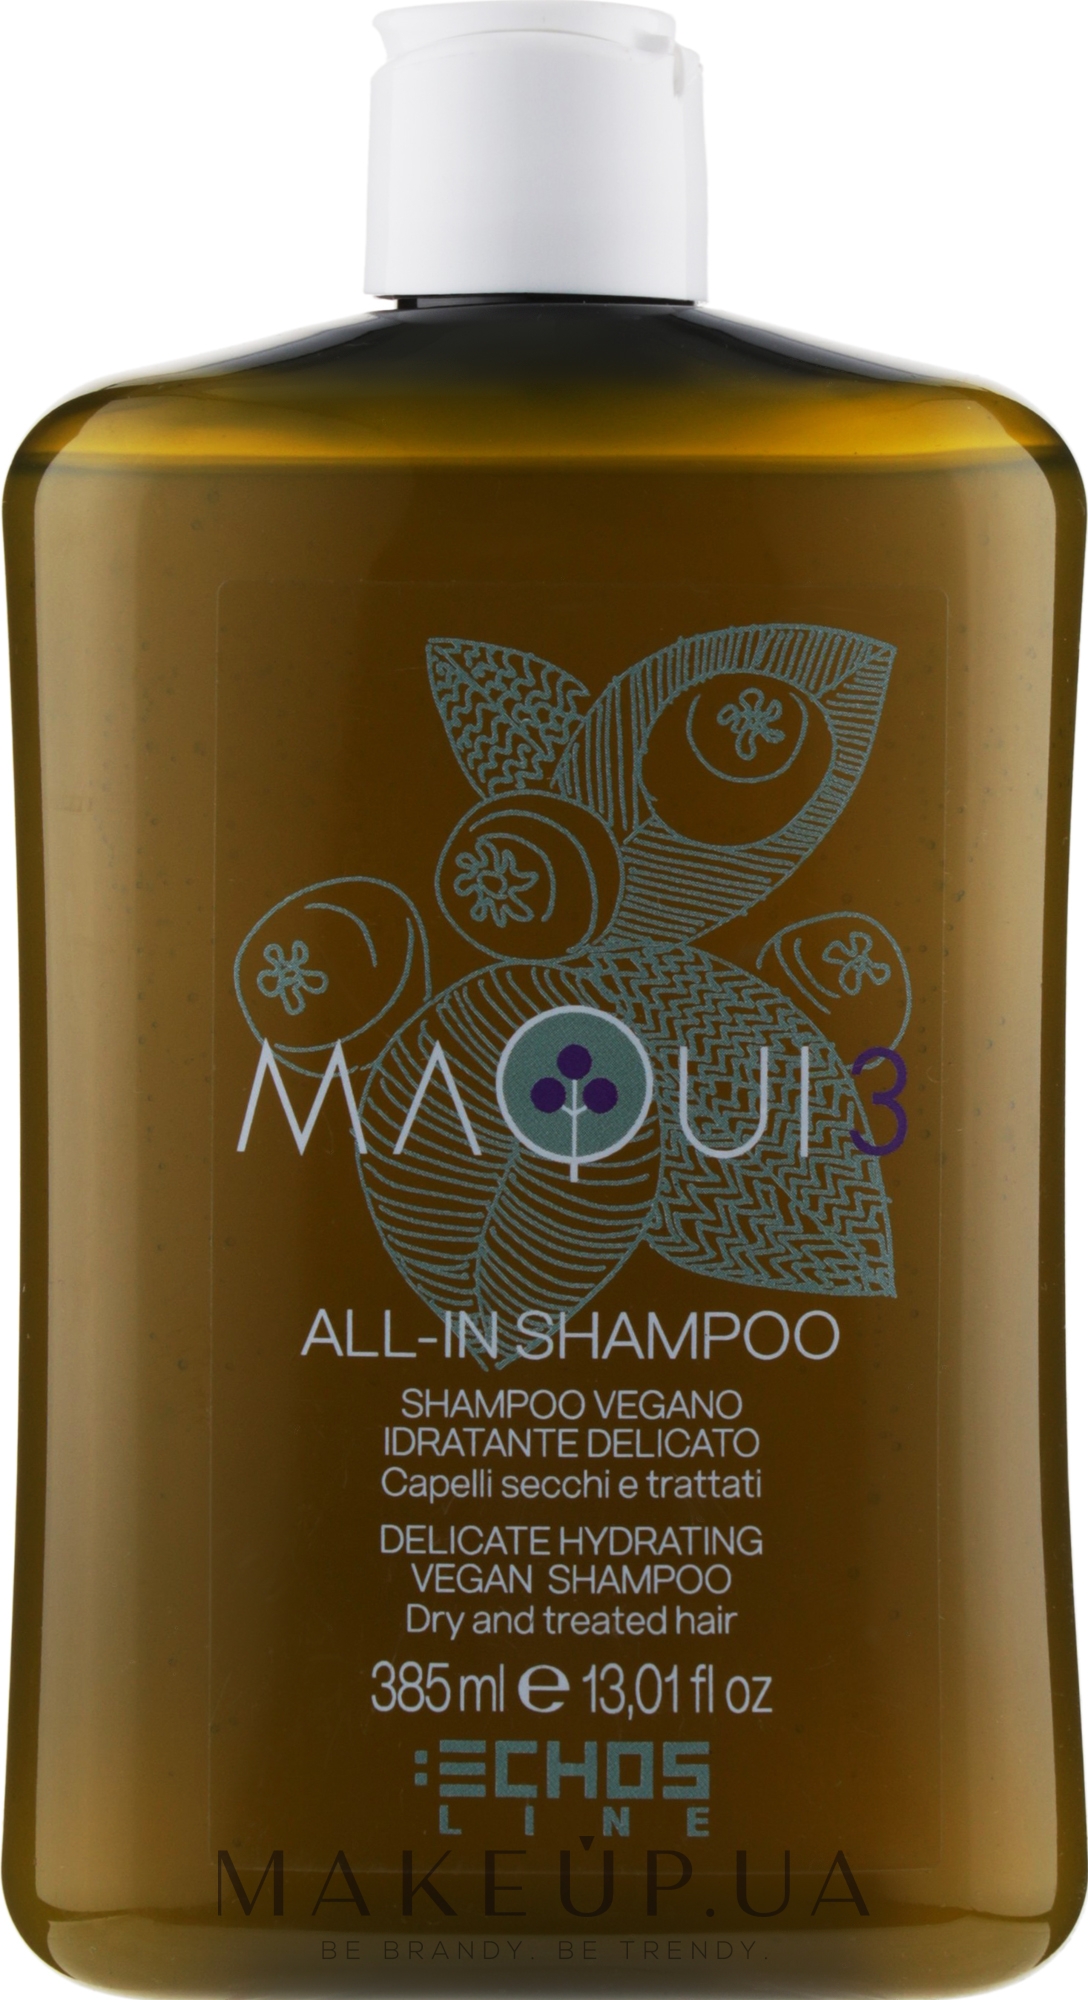 Делікатний зволожувальний шампунь - Echosline Maqui 3 Delicate Hydrating Vegan Shampoo — фото 385ml